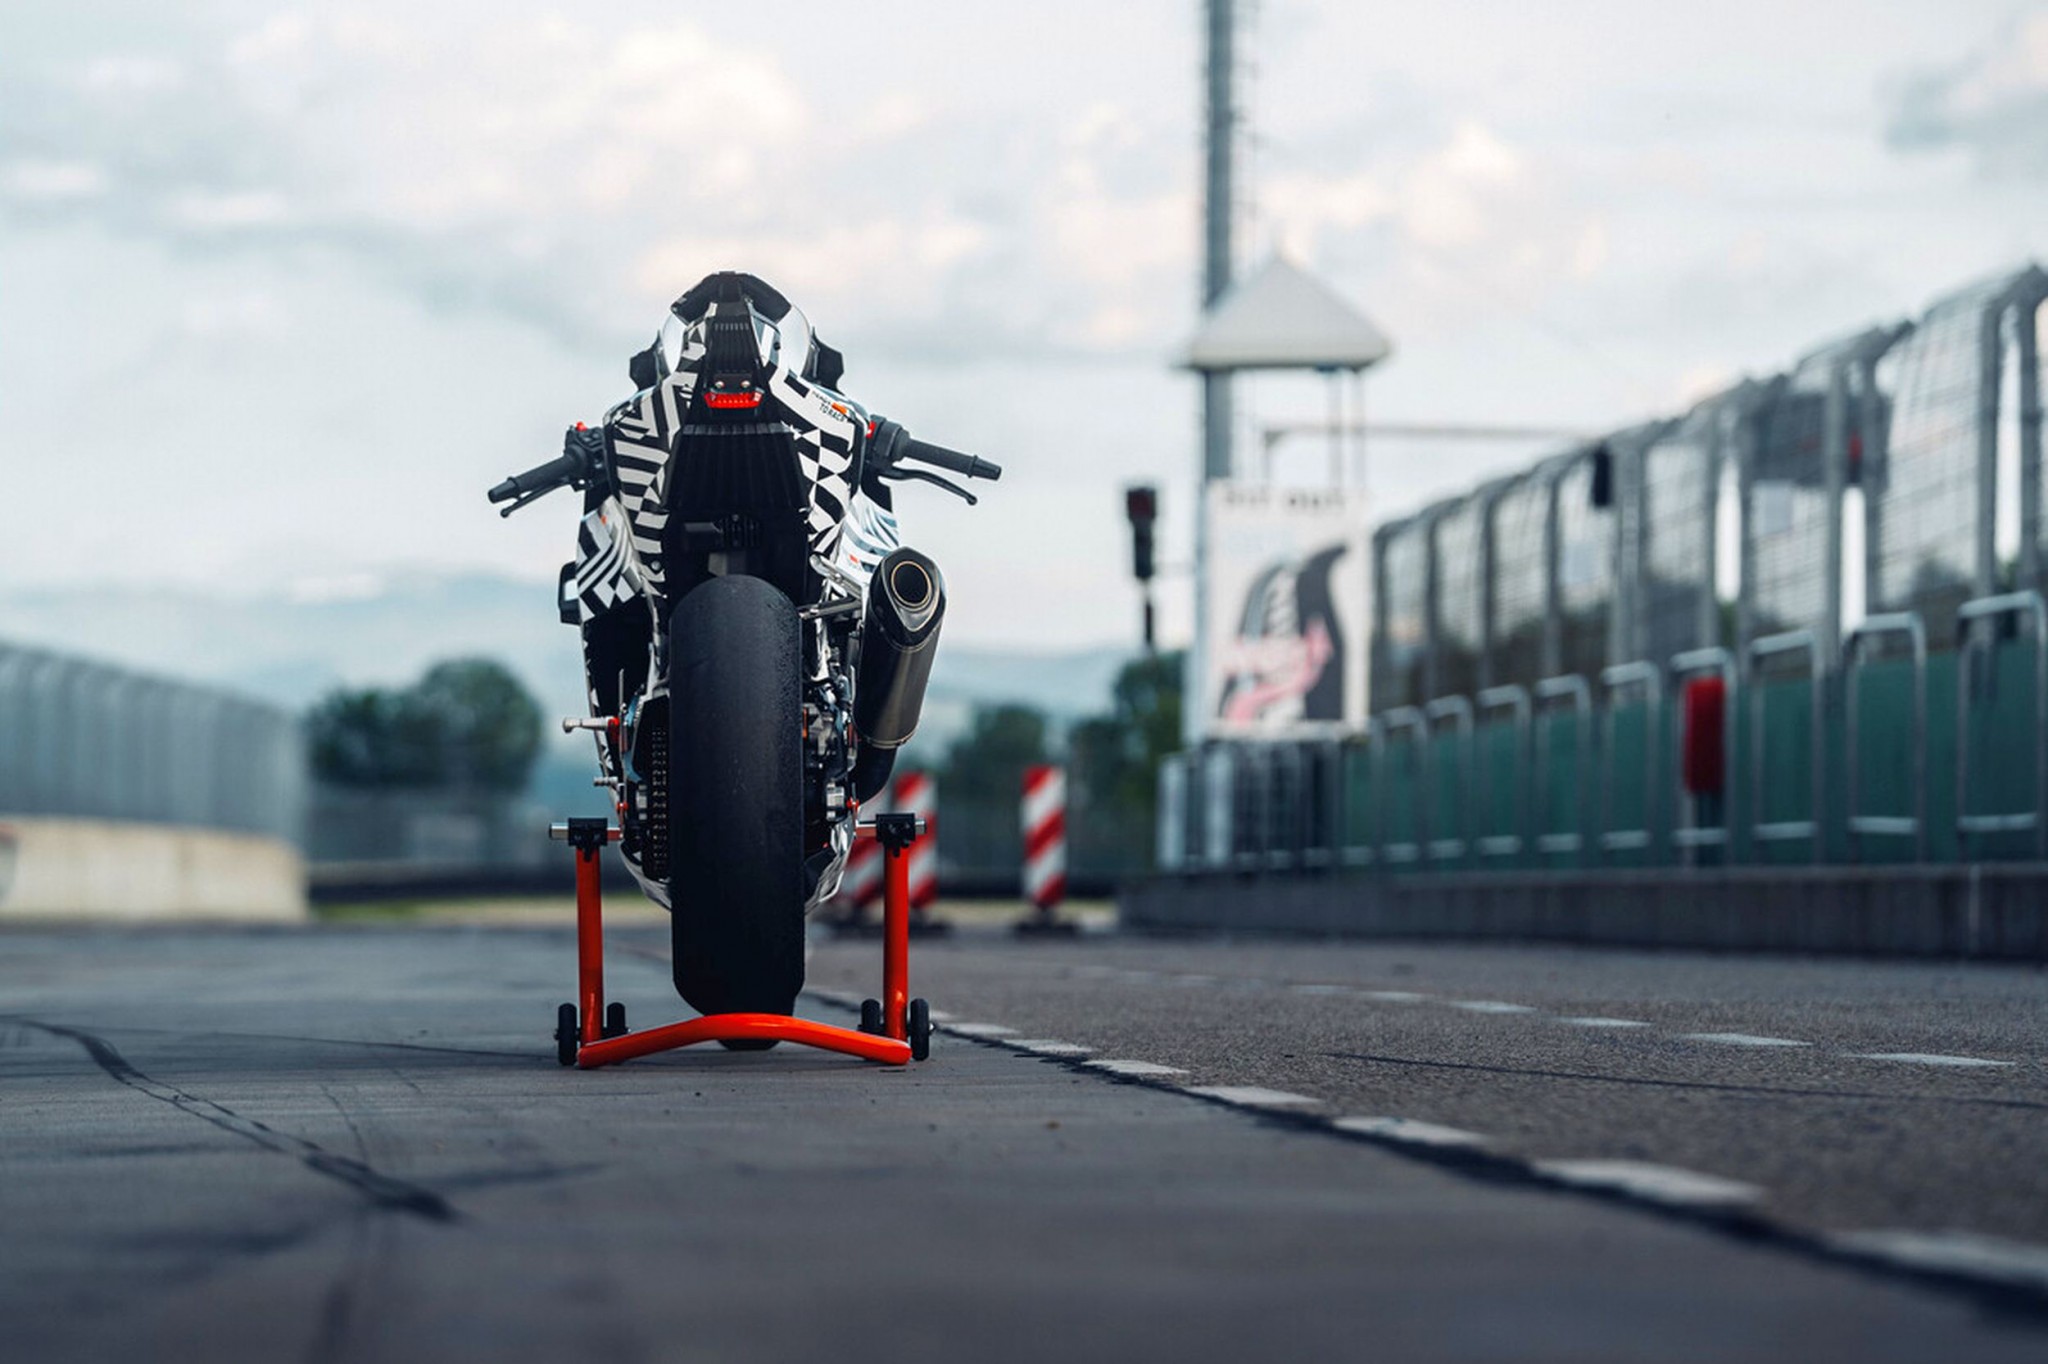 KTM 990 RC R - végre egy telivér sportmotor az országútra! - Kép 2